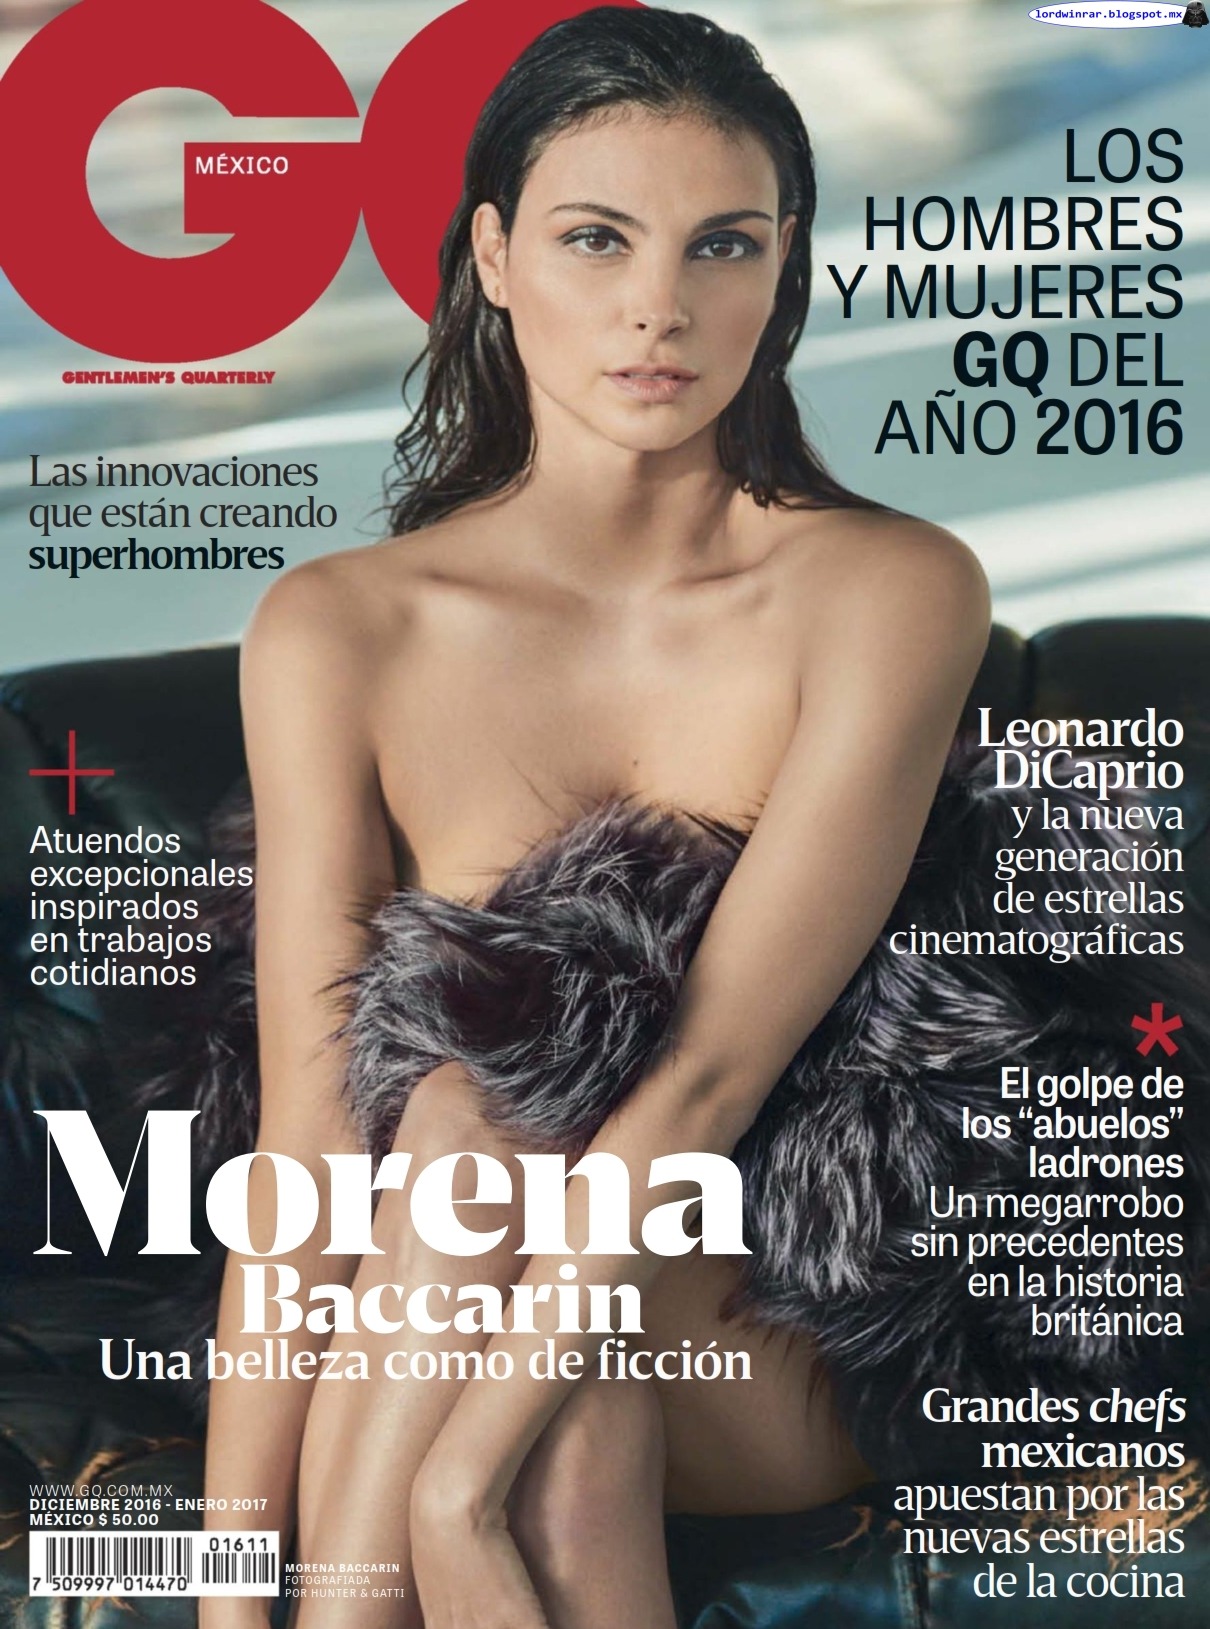   Morena Baccarin - GQ Mexico 2016 Diciembre (12 Fotos HQ)Morena Baccarin semi desnuda